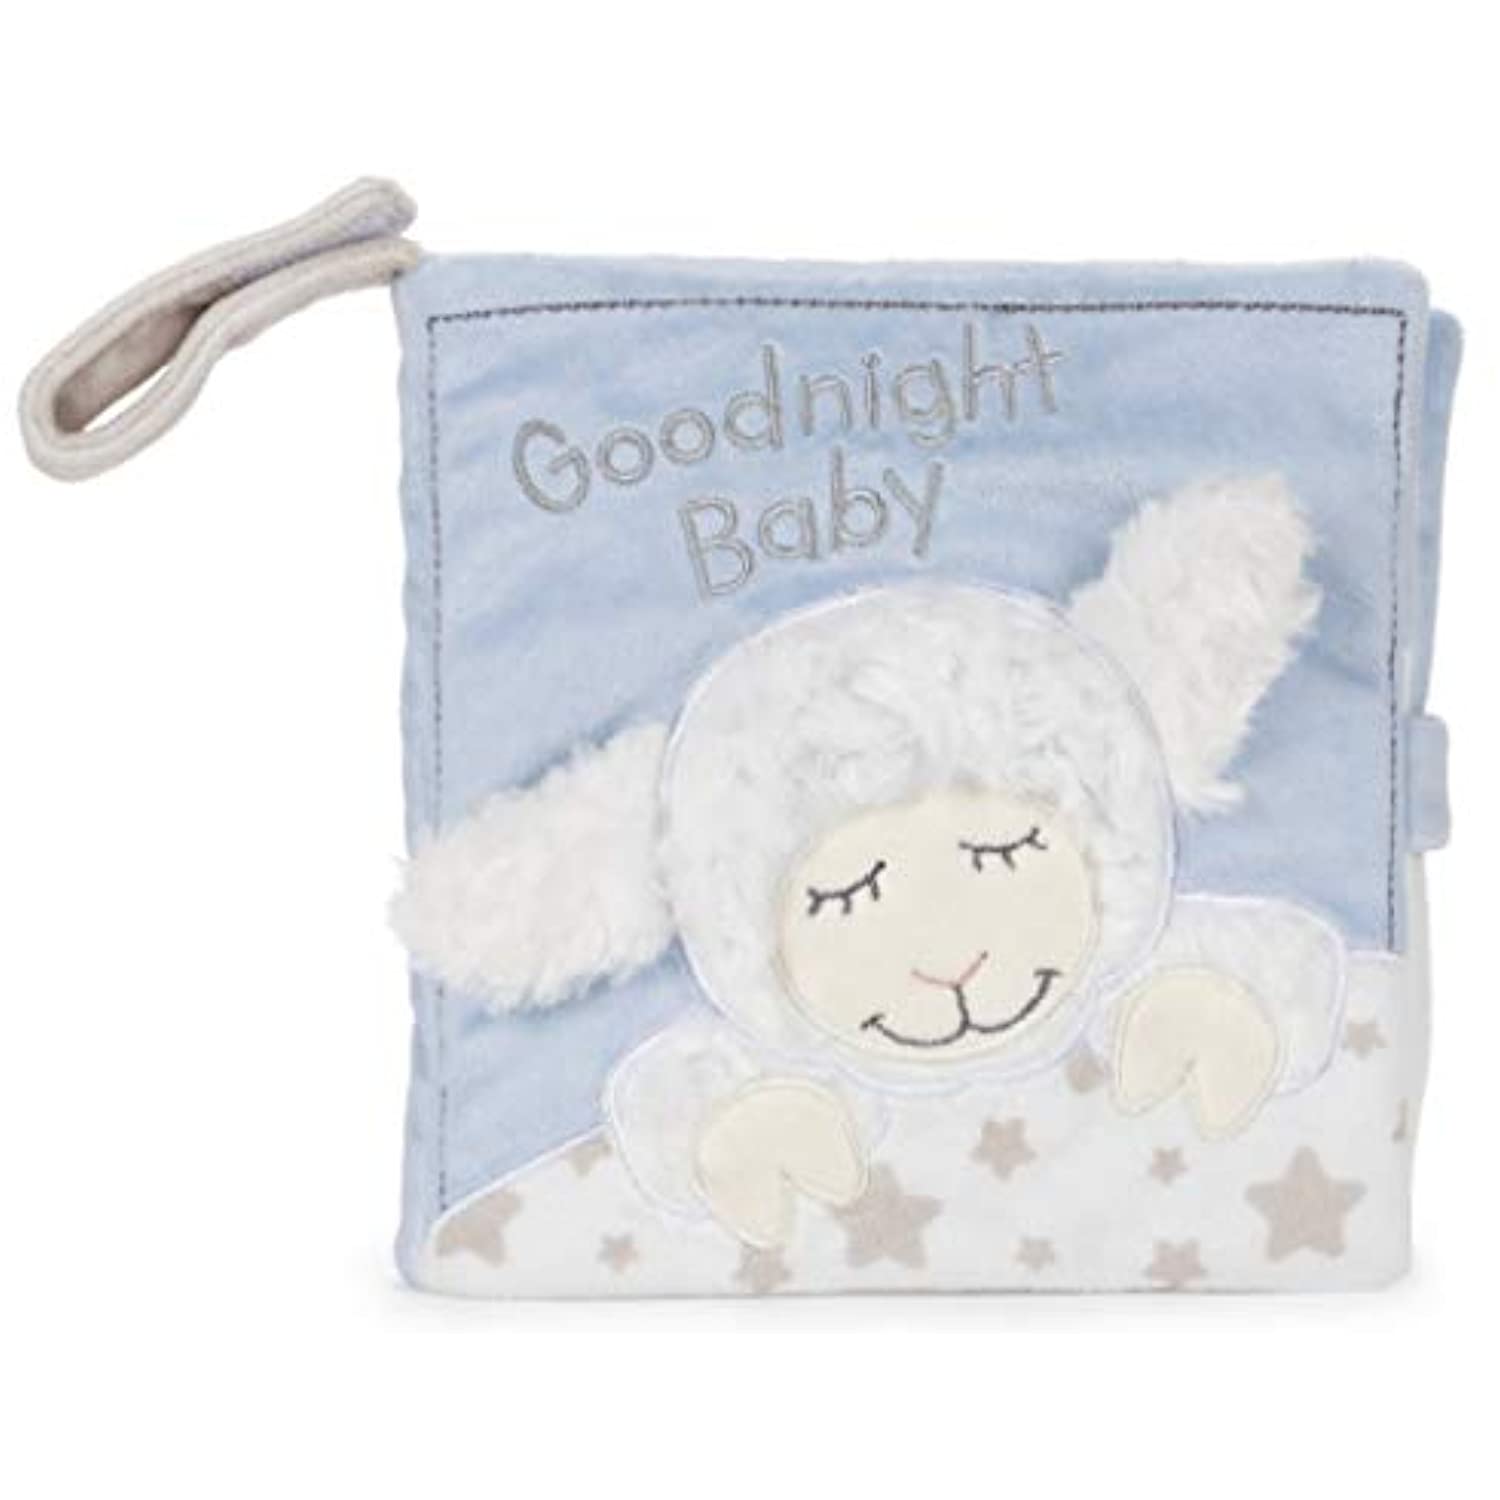 GUND Baby Goodnight Winky Lamb Soft Book Plush Stuffed Sensory Stimulating Toy, 8"